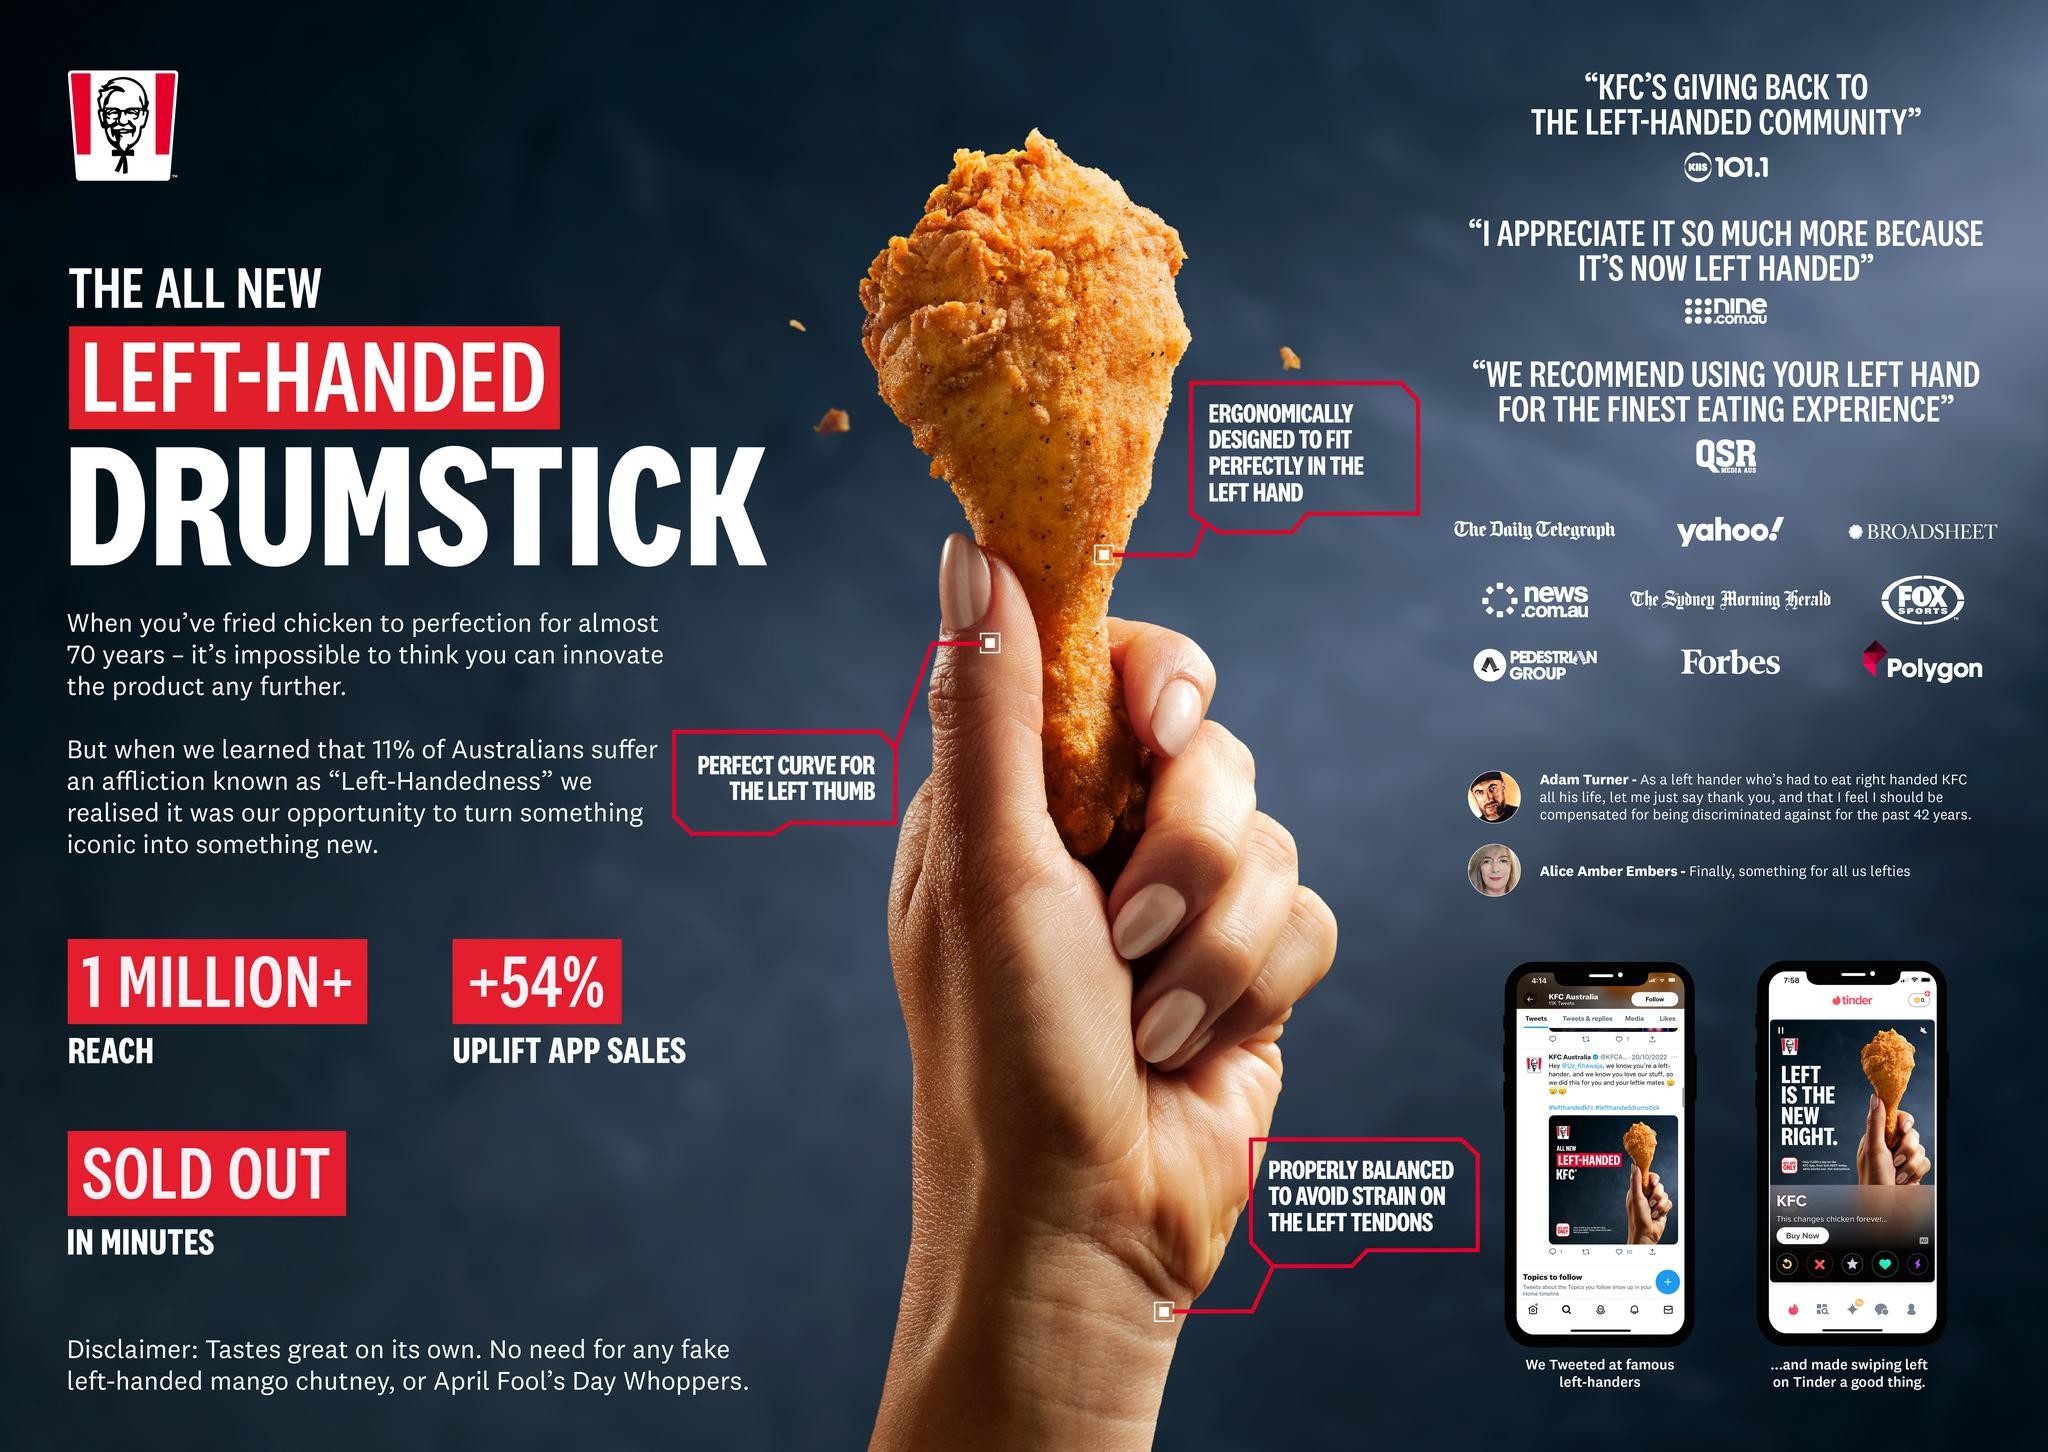 KFC's Left-Handed Drumstick